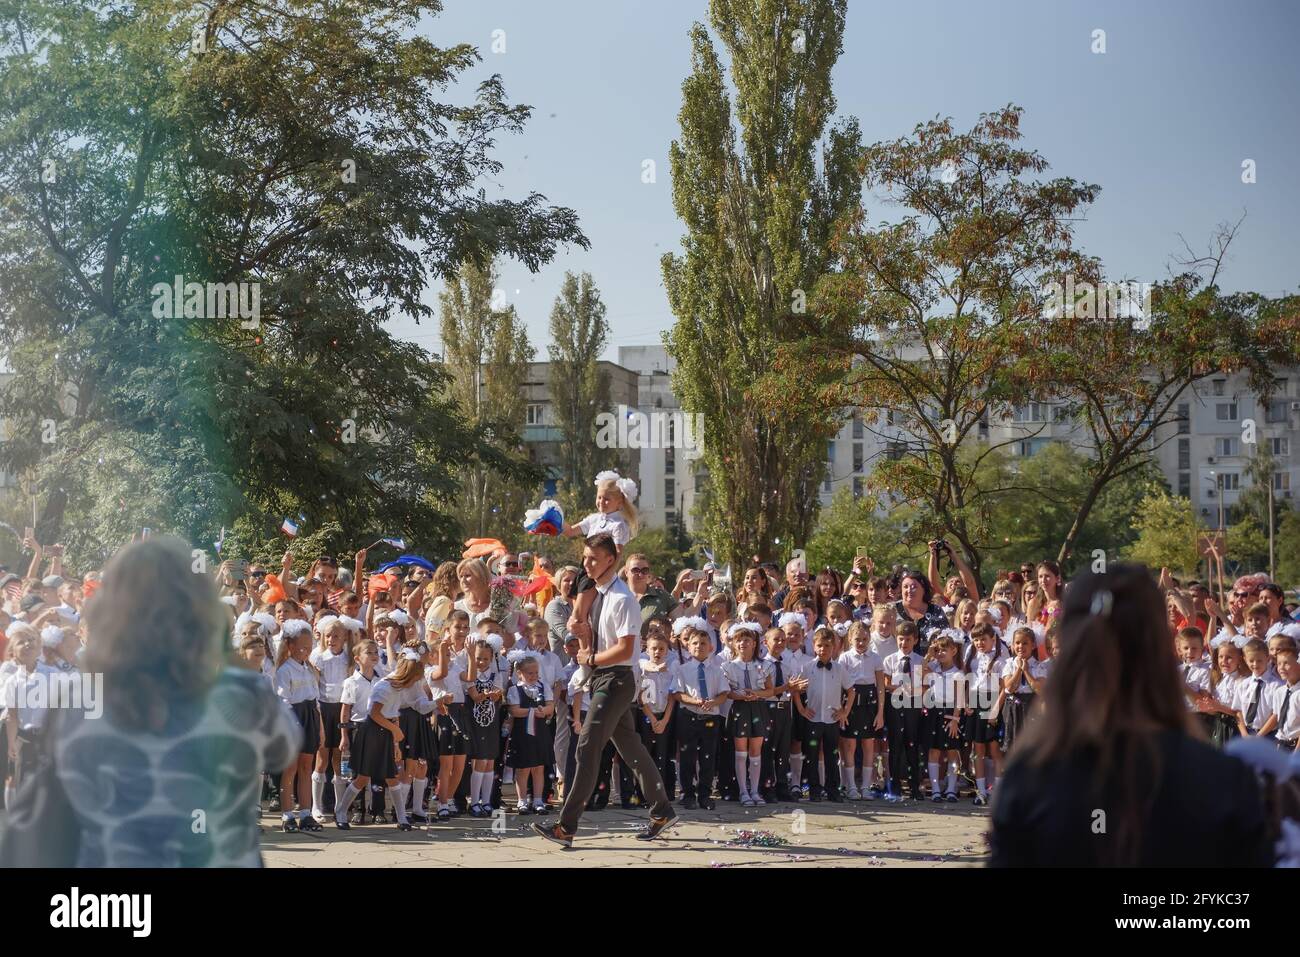 Kerch Russia - 1 settembre 2020 - i bambini vanno a scuola, prima campana, bambini in uniformi scolastiche, insegnanti e genitori sullo sfondo vicino al sc Foto Stock